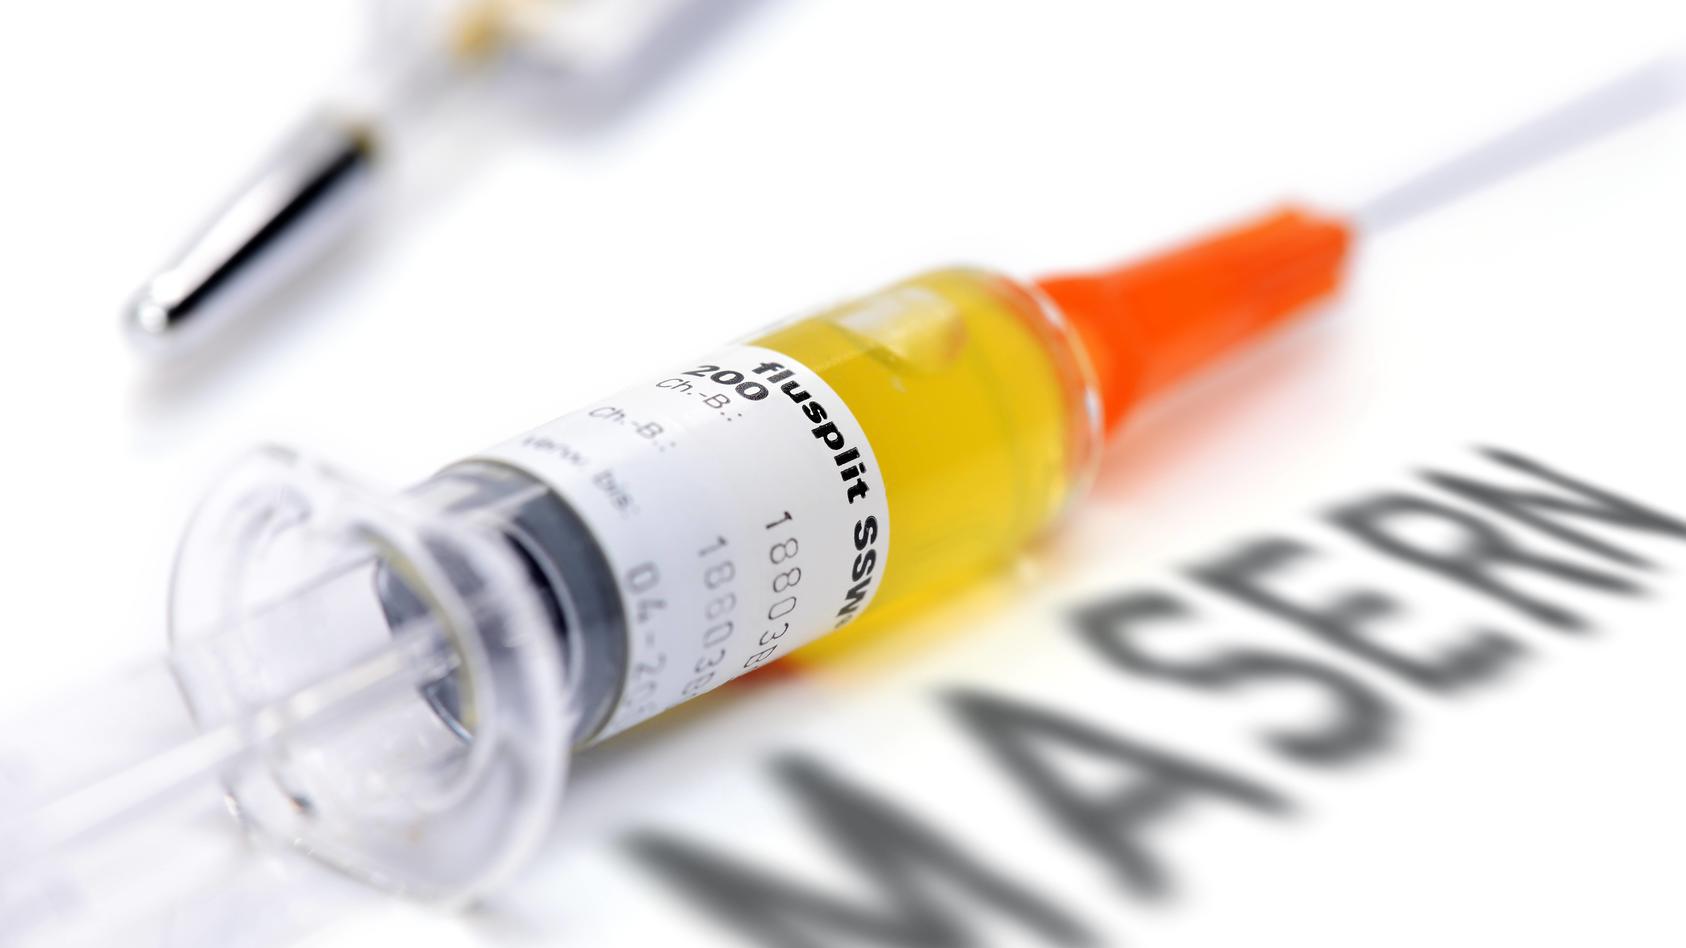 Impfspritze und Masern-Schriftzug, Impfung gegen Masern  